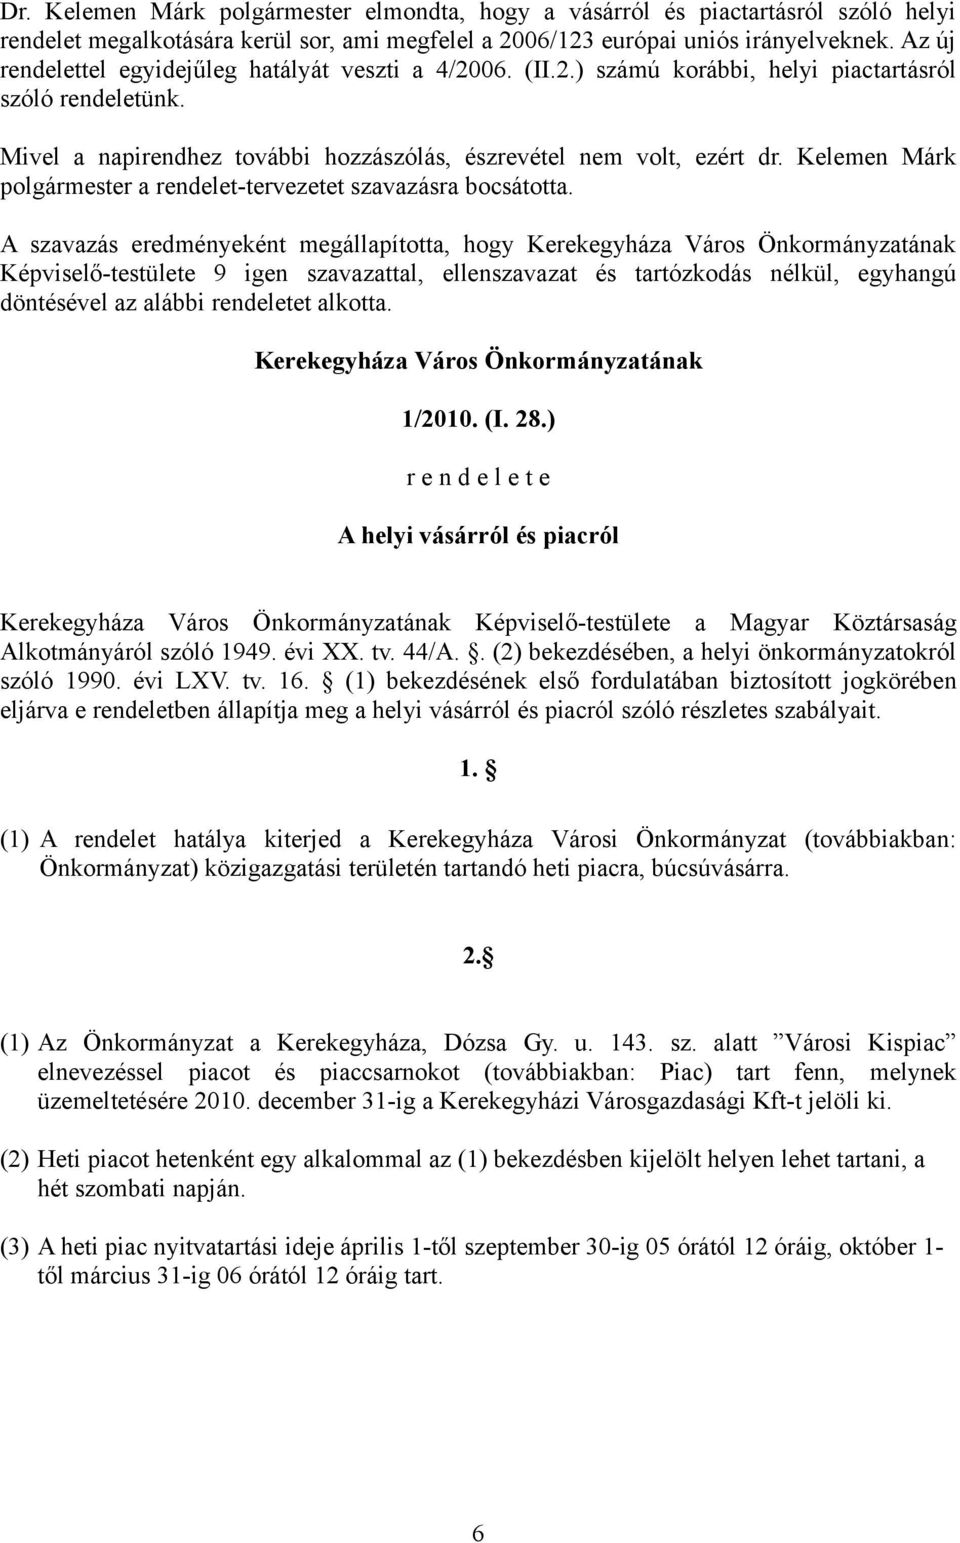 Kelemen Márk polgármester a rendelet-tervezetet szavazásra bocsátotta. döntésével az alábbi rendeletet alkotta. Kerekegyháza Város Önkormányzatának 1/2010. (I. 28.